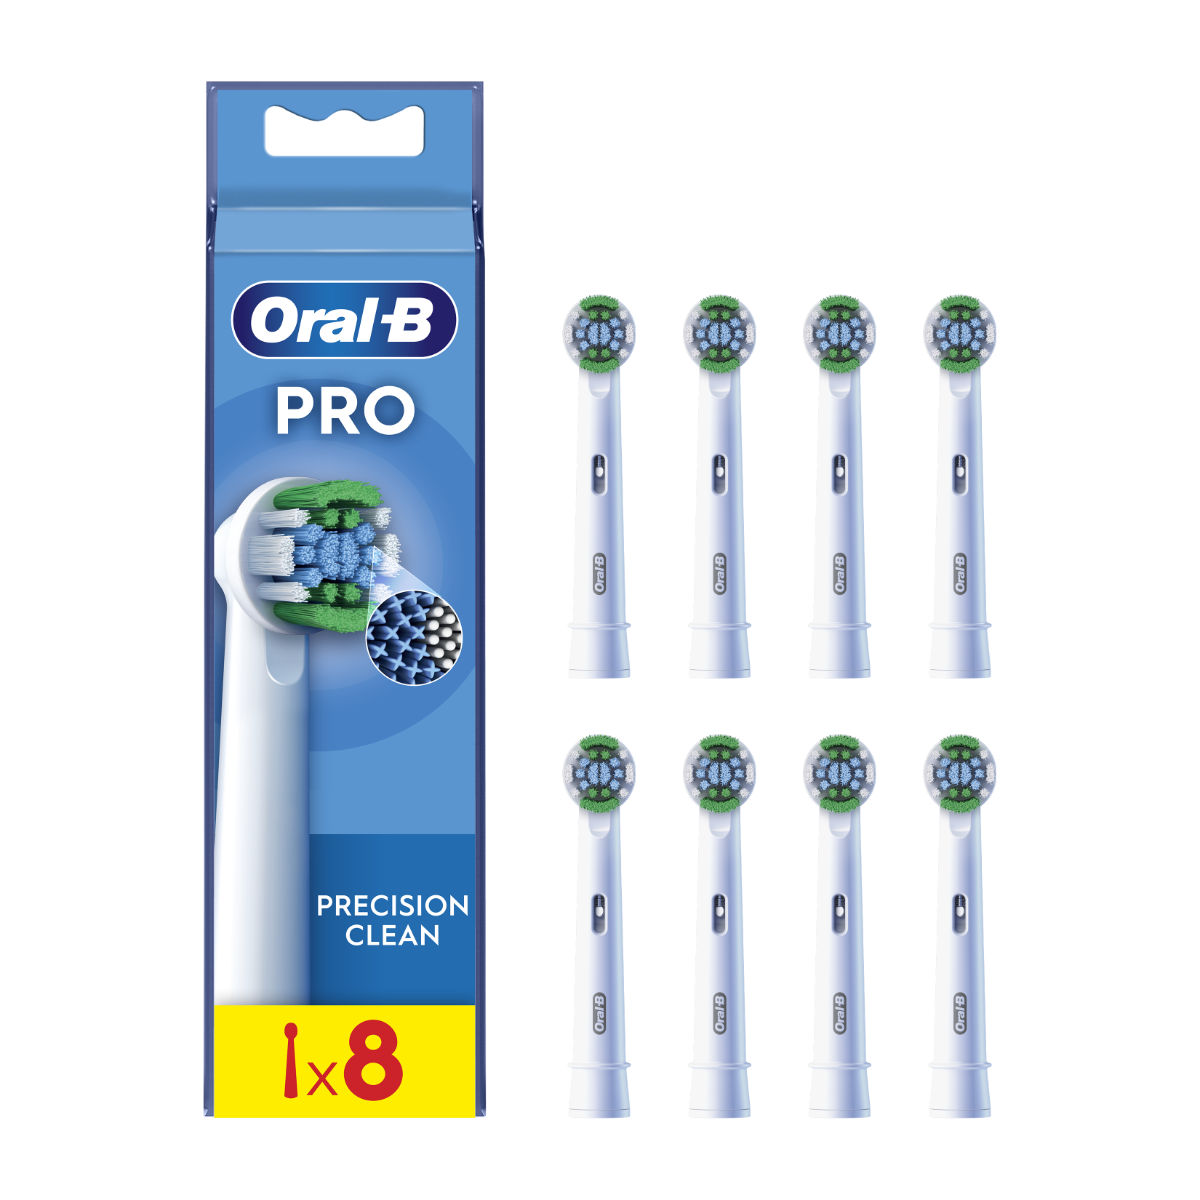 Oral-B EB 20-8 PRO Precision Clean náhradní hlavice 8 ks Oral-B